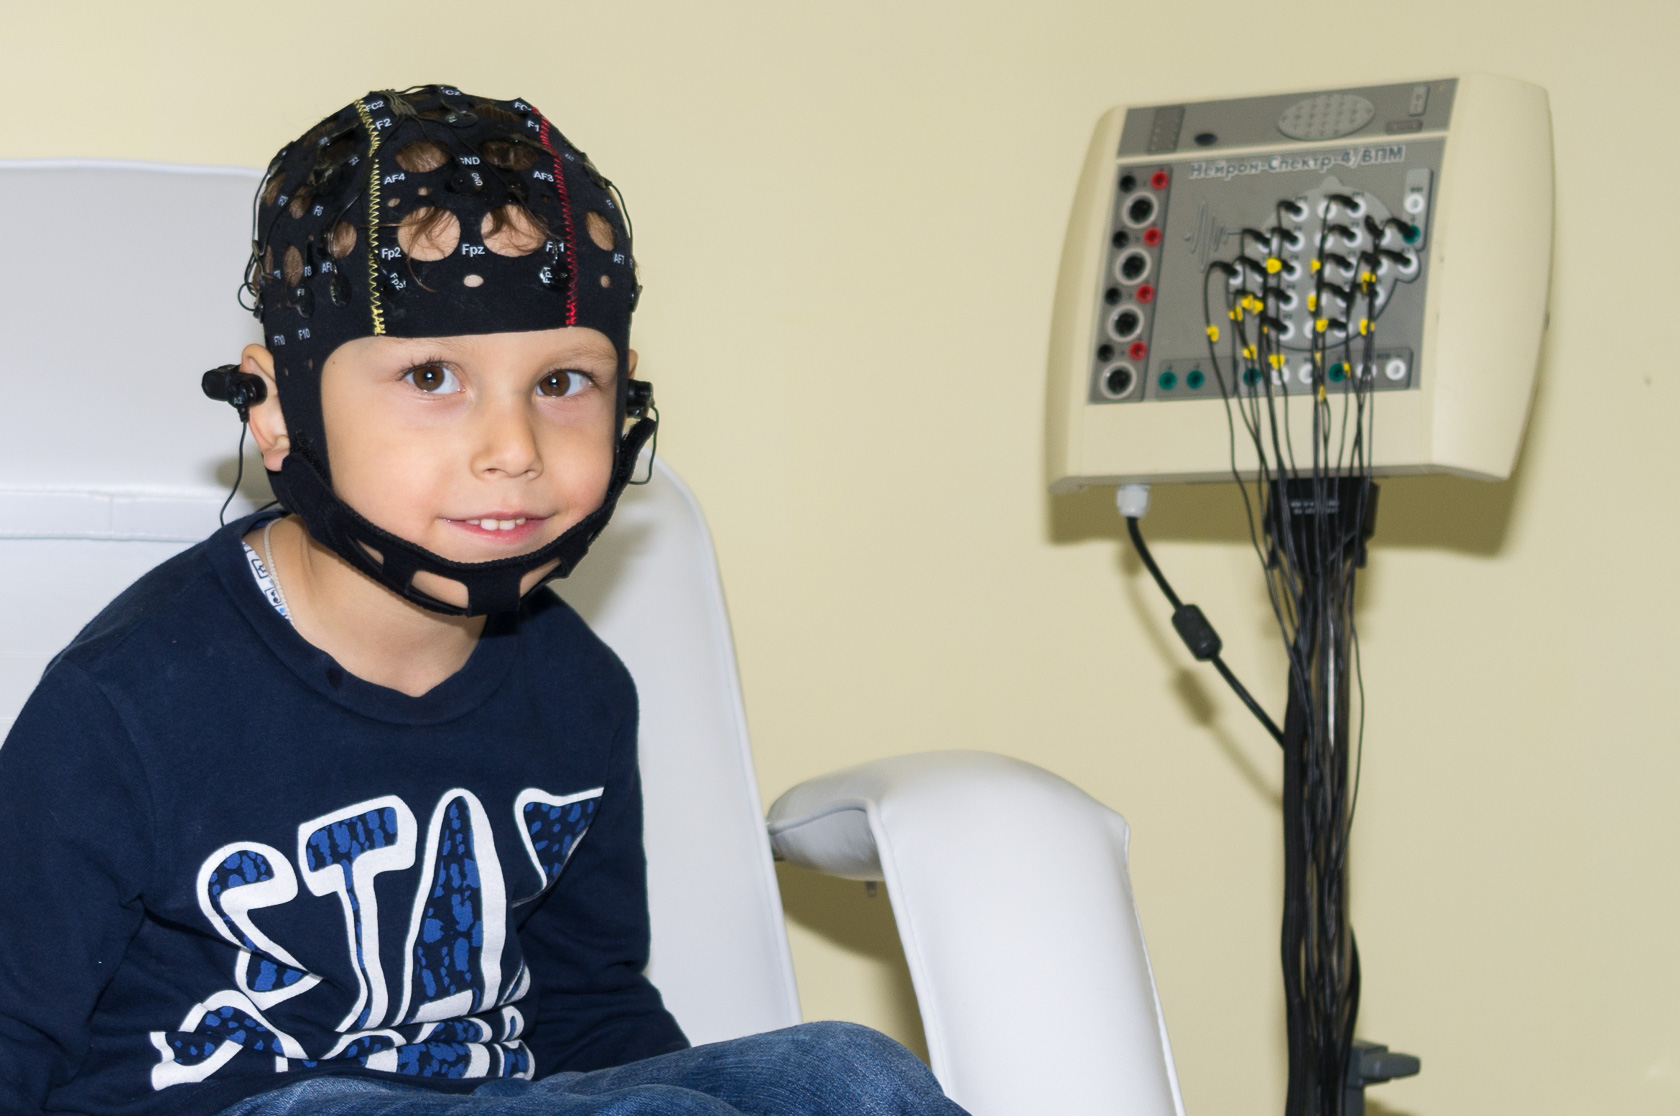 Ээг мониторирование. Электроэнцефалография головного мозга (ЭЭГ). РЭГ И ЭЭГ. Нейрософт шапочка для ЭЭГ. ЭЭГ детям.